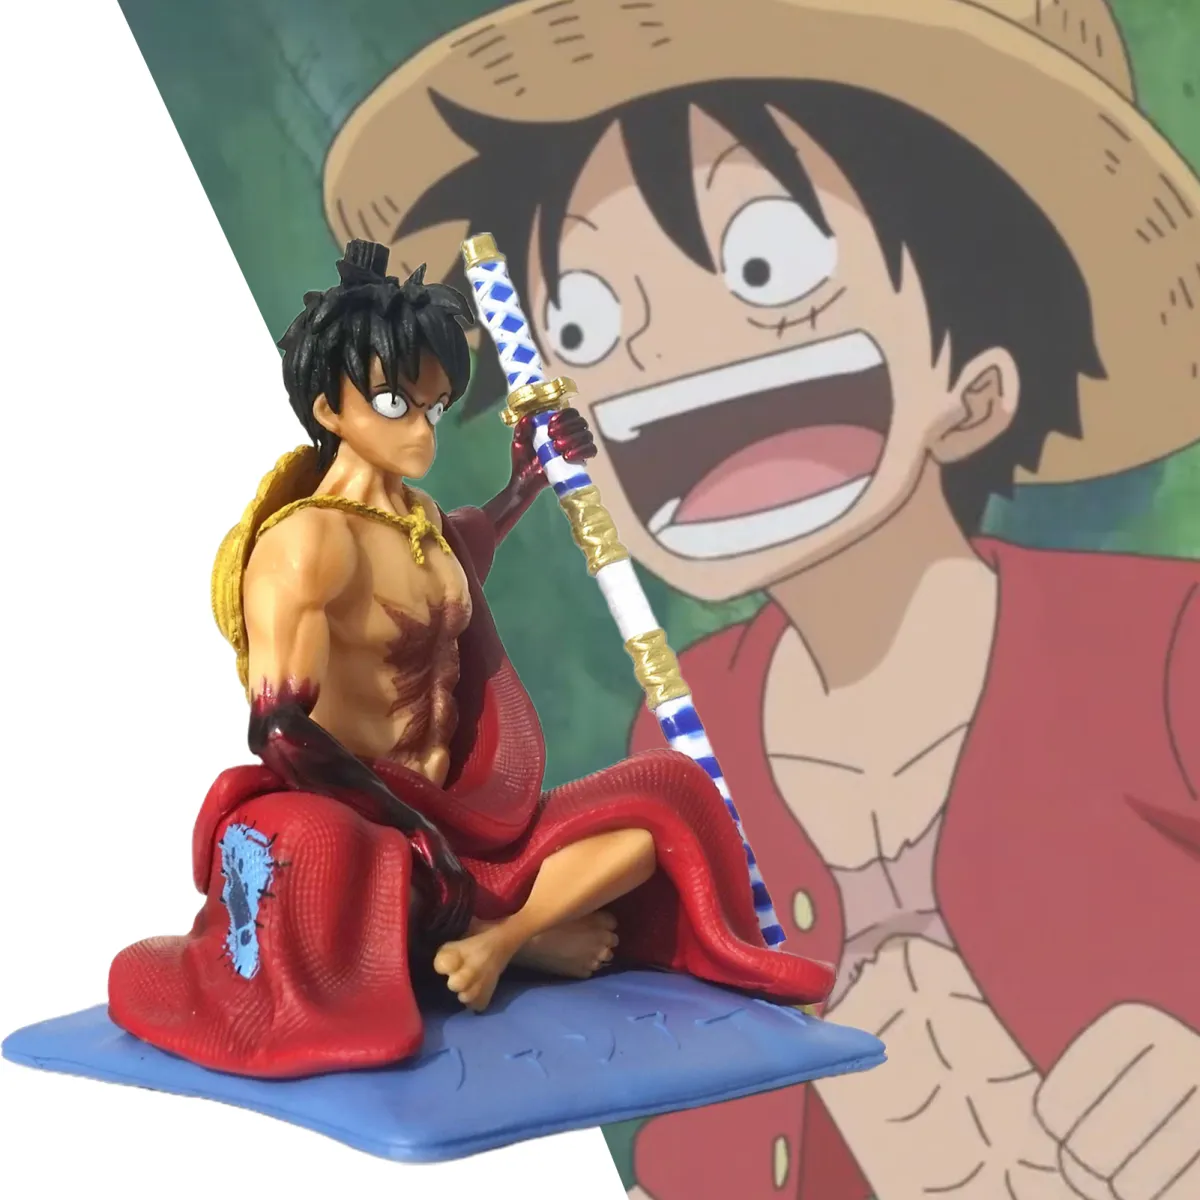 Mô Hình Đồ Chơi: Để trở thành một fan hâm mộ đích thực của One Piece, bạn không thể bỏ qua những mô hình đồ chơi đẹp mắt như thế này. Mỗi mô hình được sản xuất tỉ mỉ để tái hiện chân thực nhất các nhân vật trong phim. Tất cả chỉ để đưa bạn vào thế giới đầy màu sắc của One Piece.